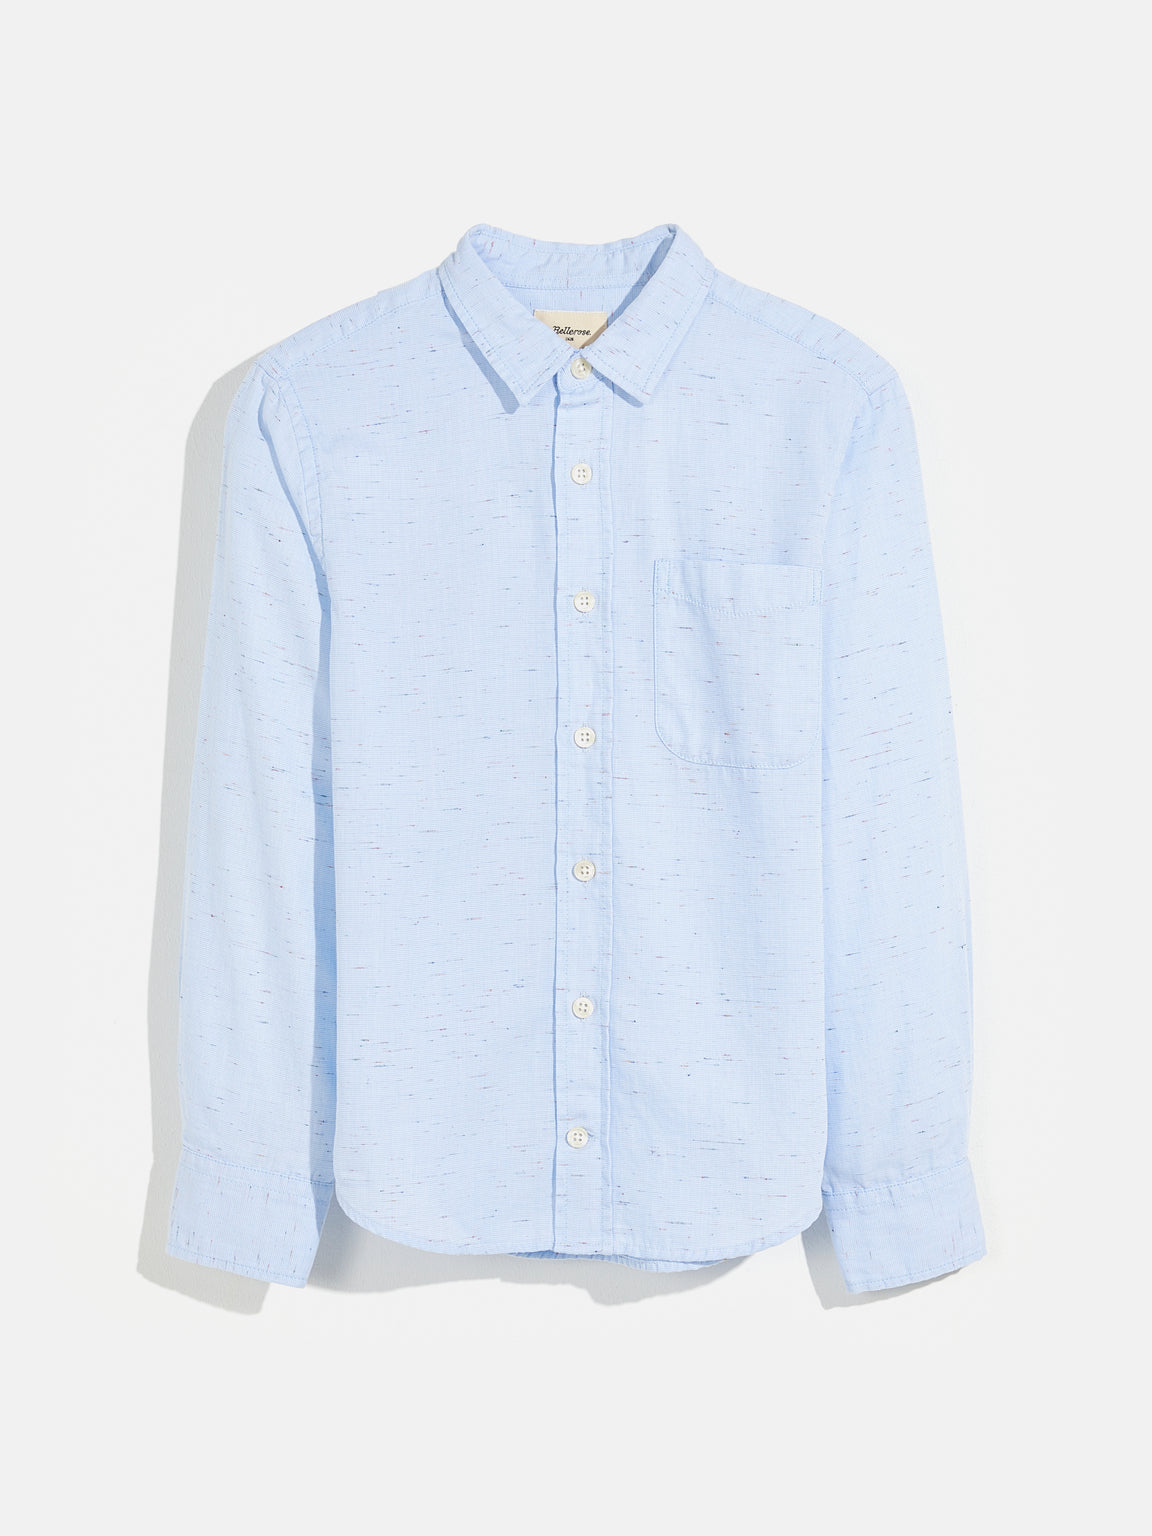 Ganix Shirt - Blue | Boys Collection | Bellerose